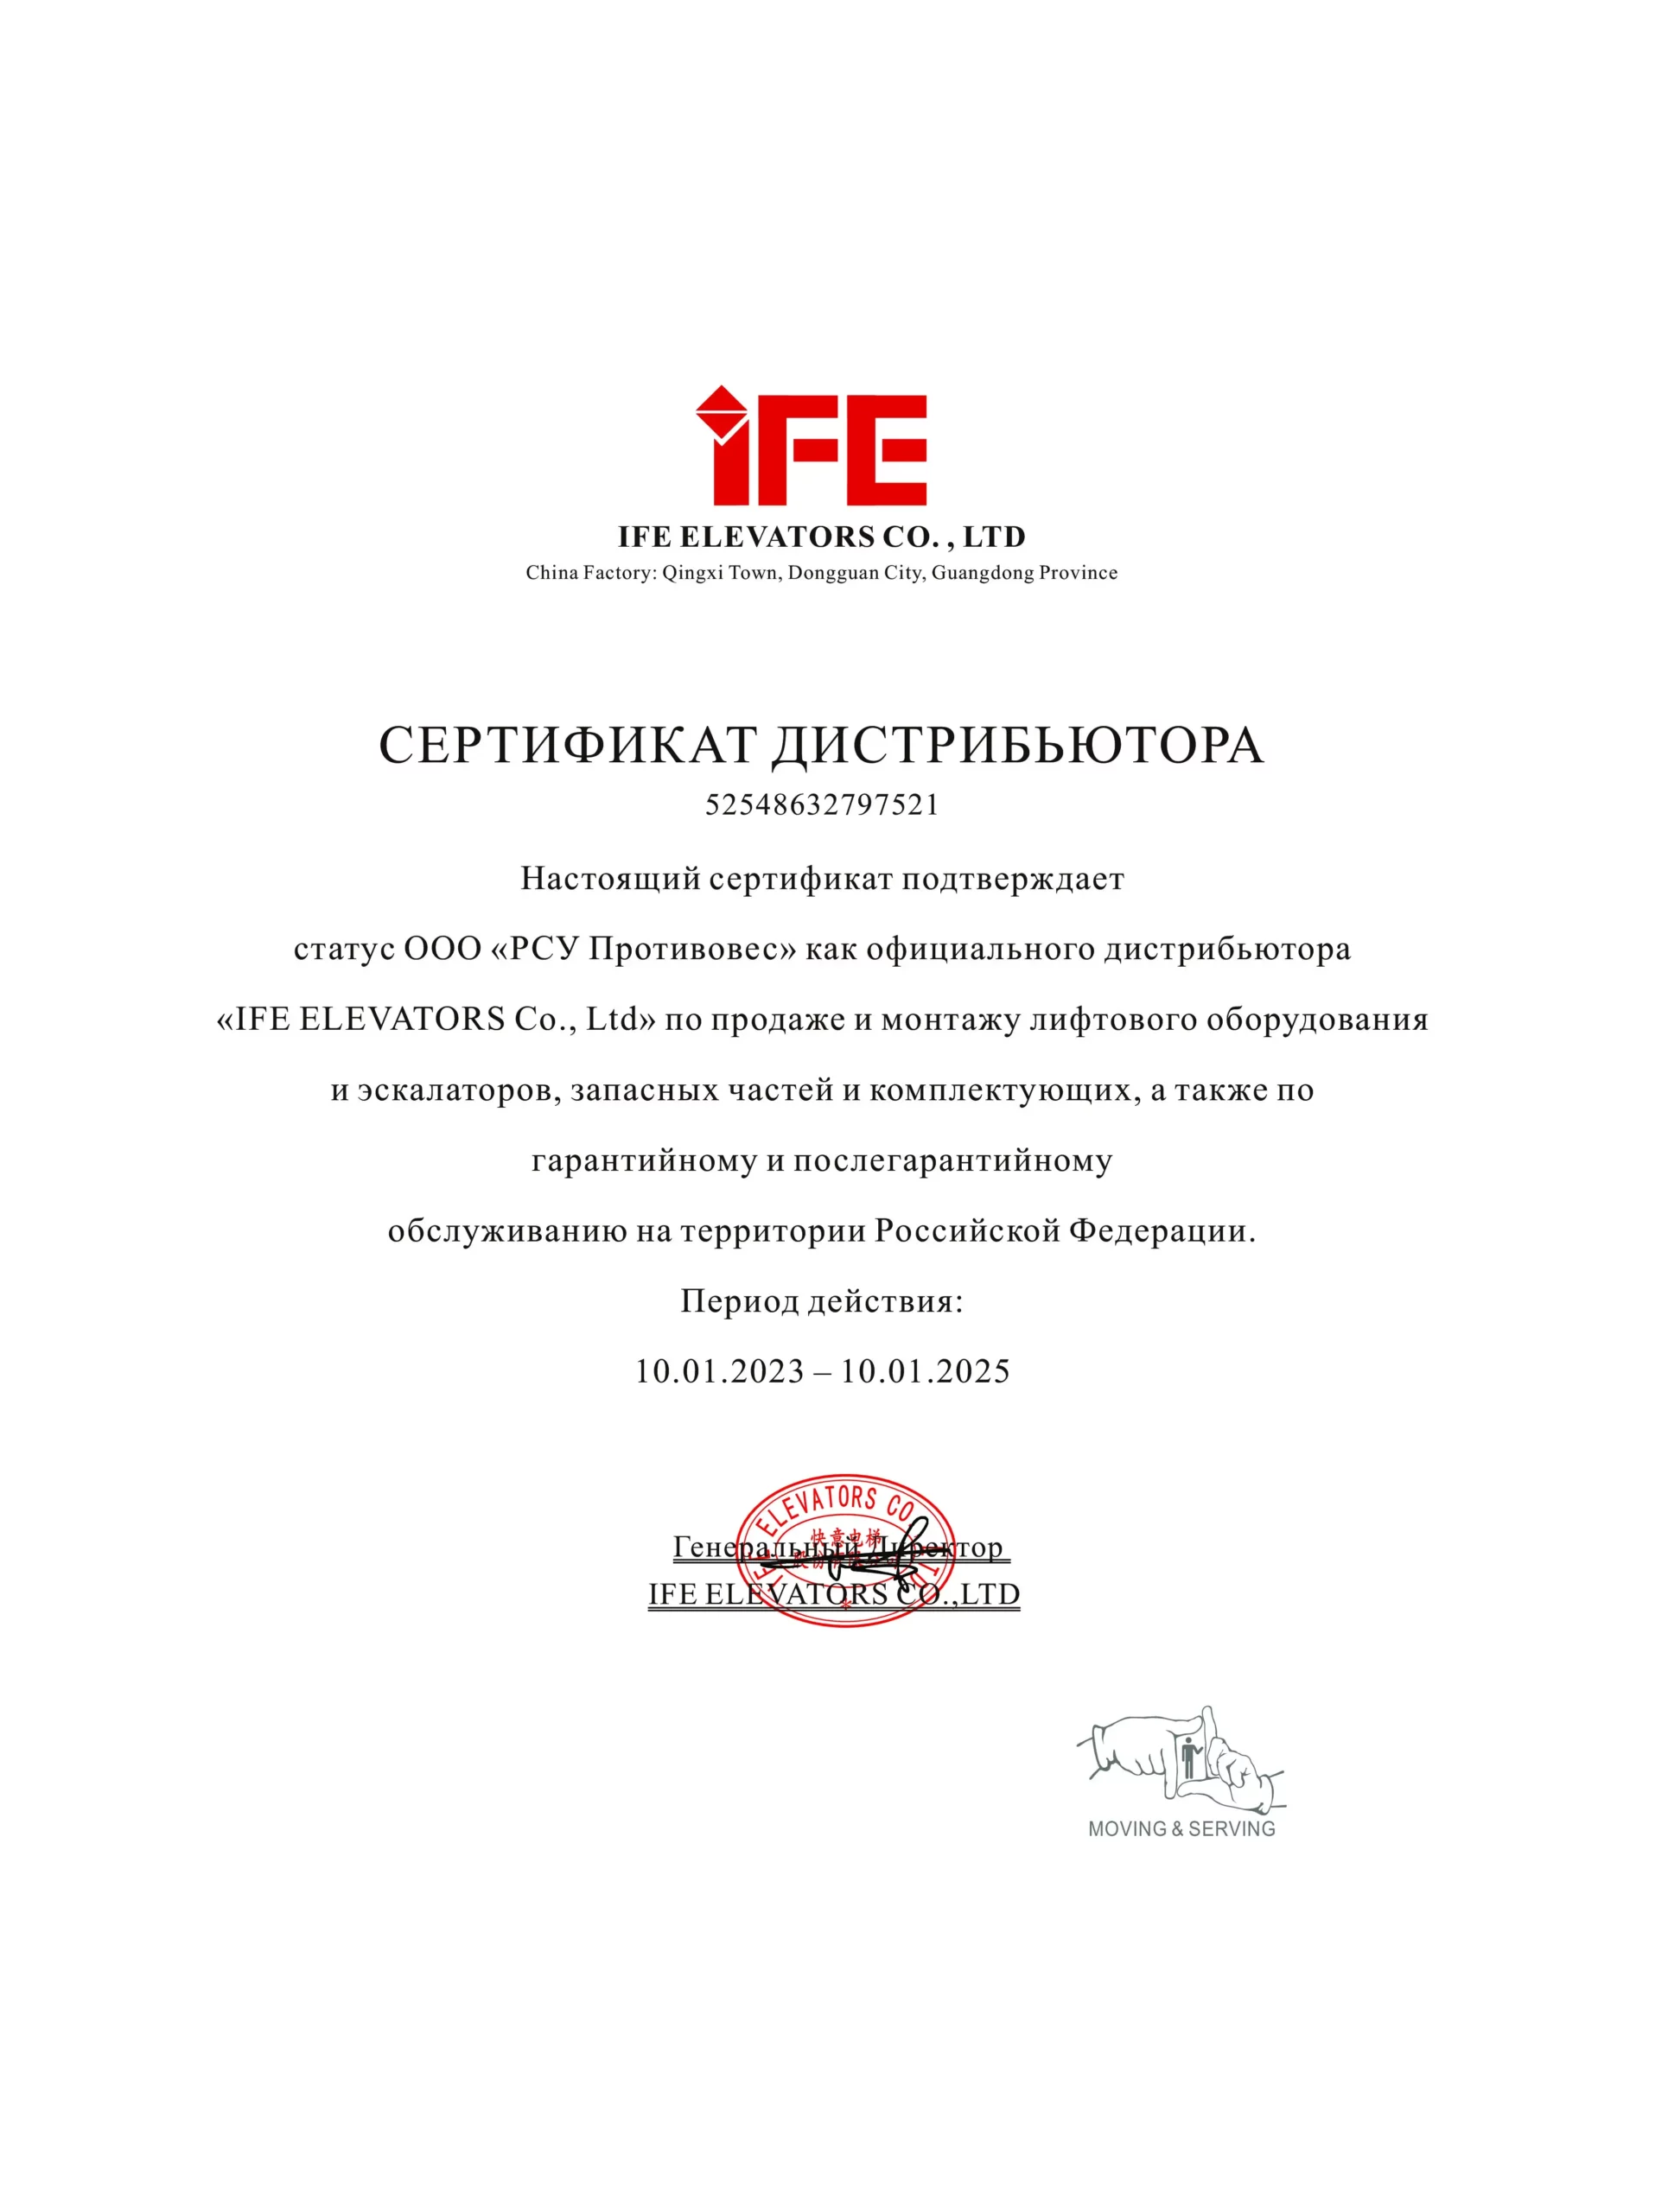 сертификат дистрибьютора IFE ELEVATORS